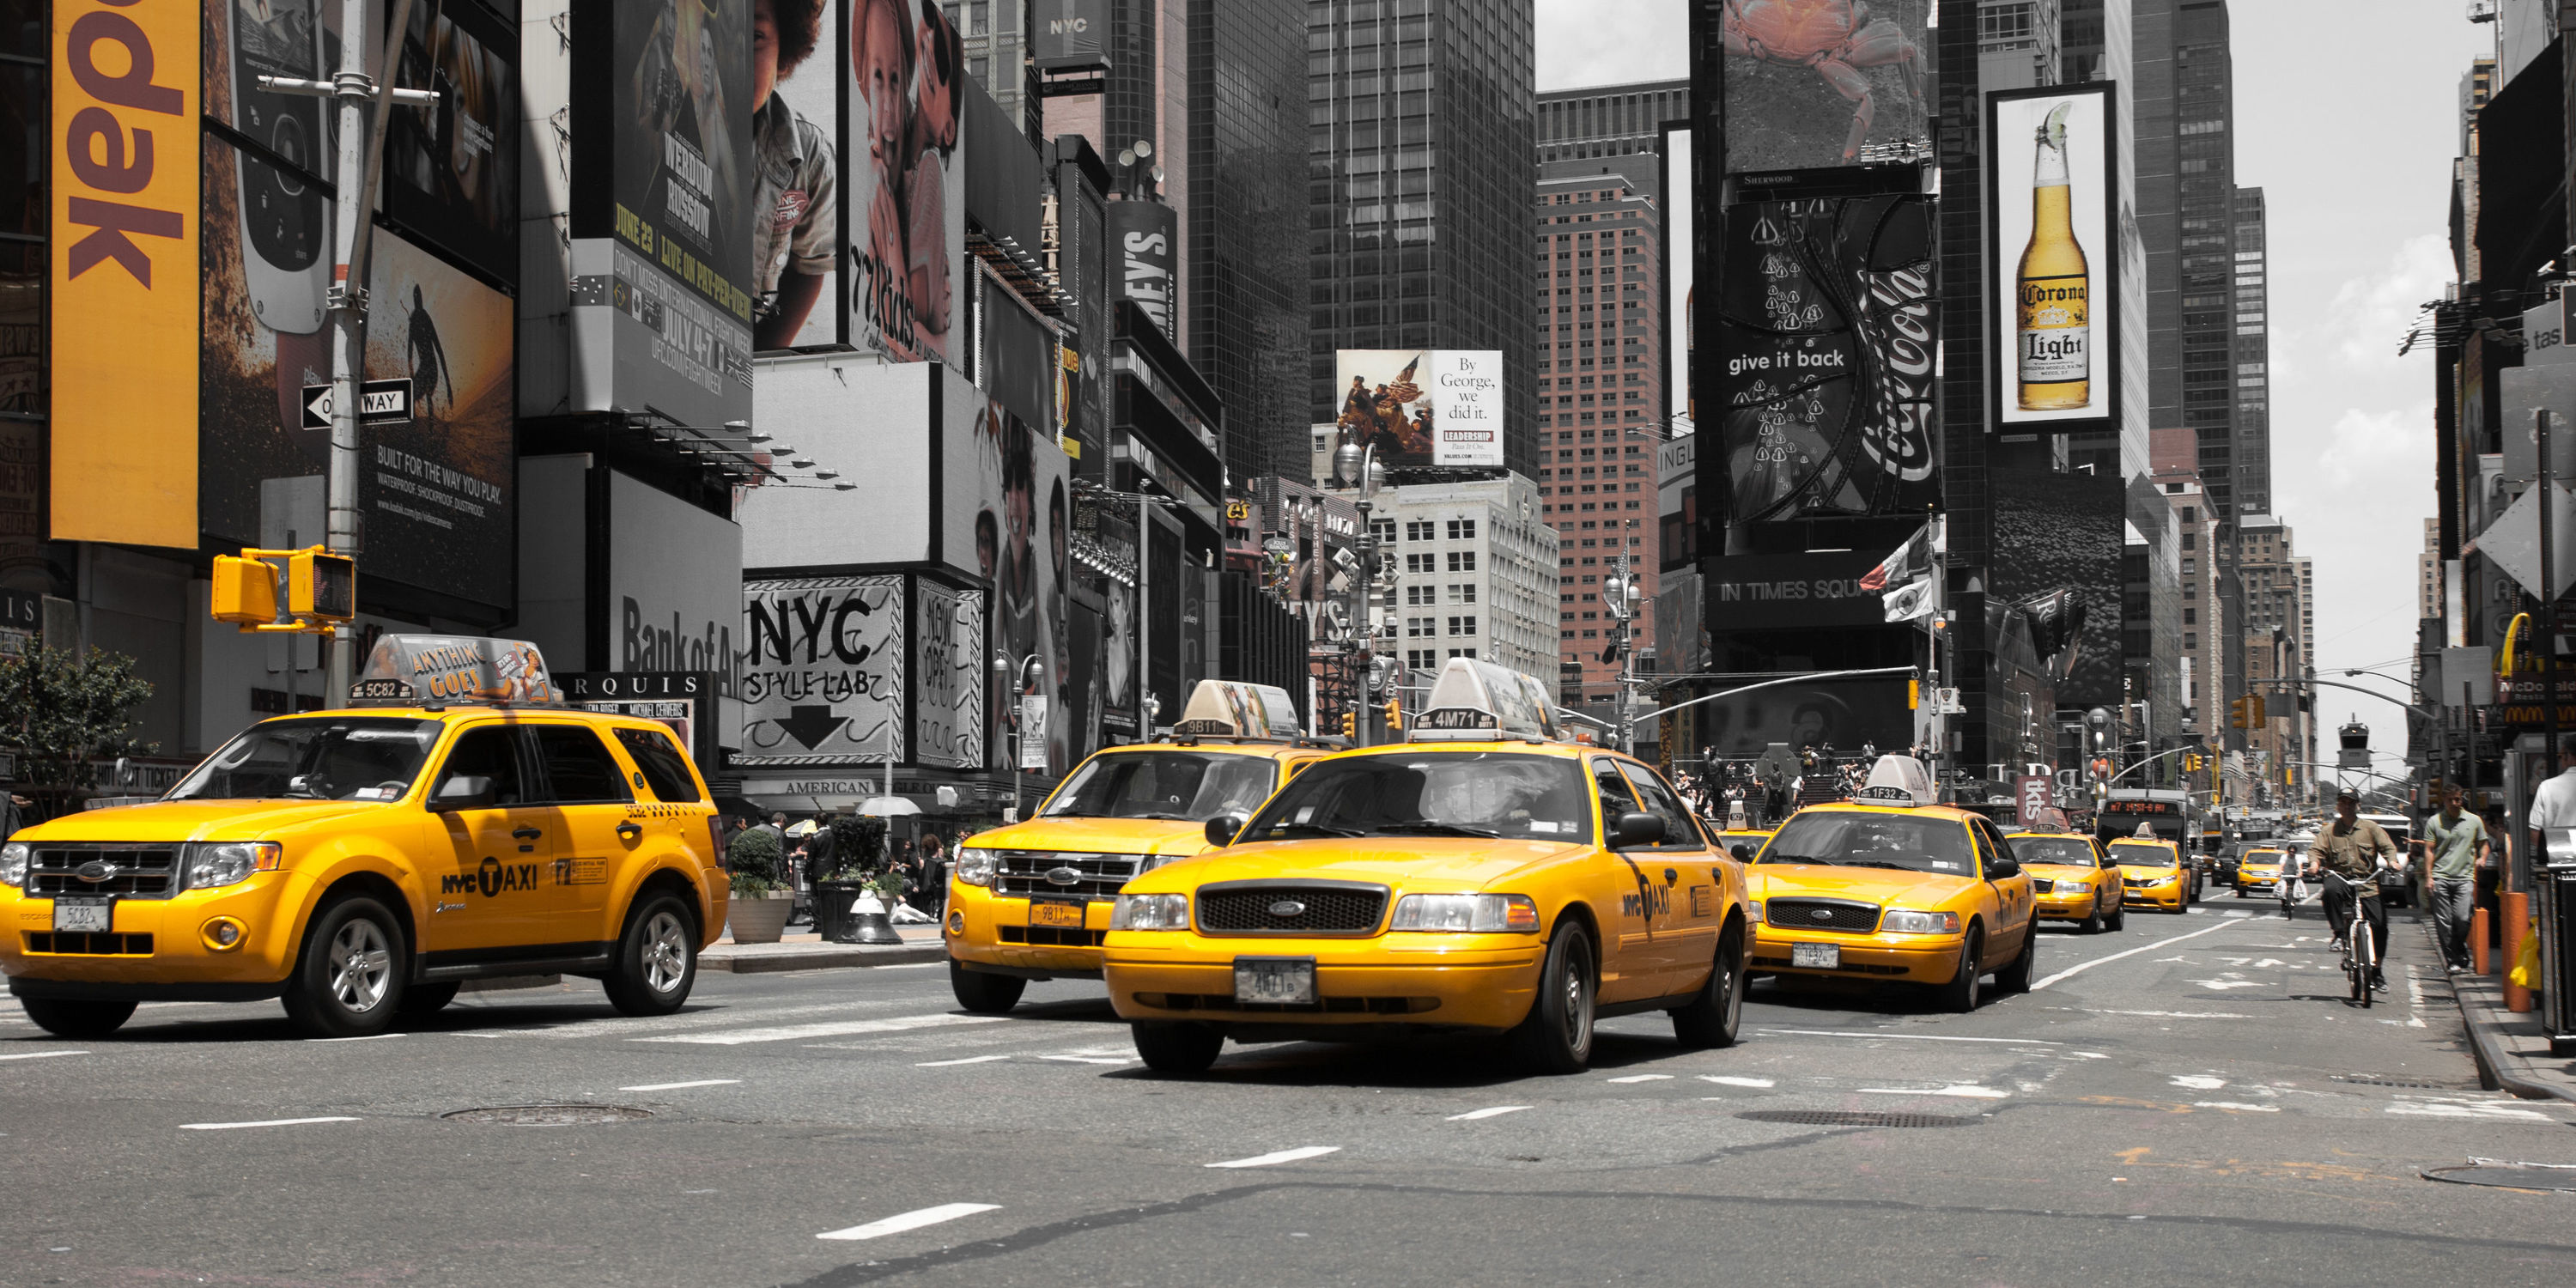 Bild mit Autos, Architektur, Straßen, Stadt, urban, New York, New York, monochrom, Staedte und Architektur, USA, schwarz weiß, hochhaus, wolkenkratzer, metropole, Straße, Auto, Hochhäuser, SW, street, Manhattan, Brooklyn Bridge, Yellow cab, taxi, Taxis, New York City, NYC, Gelbe Taxis, yellow cabs, Times Square, car, cars